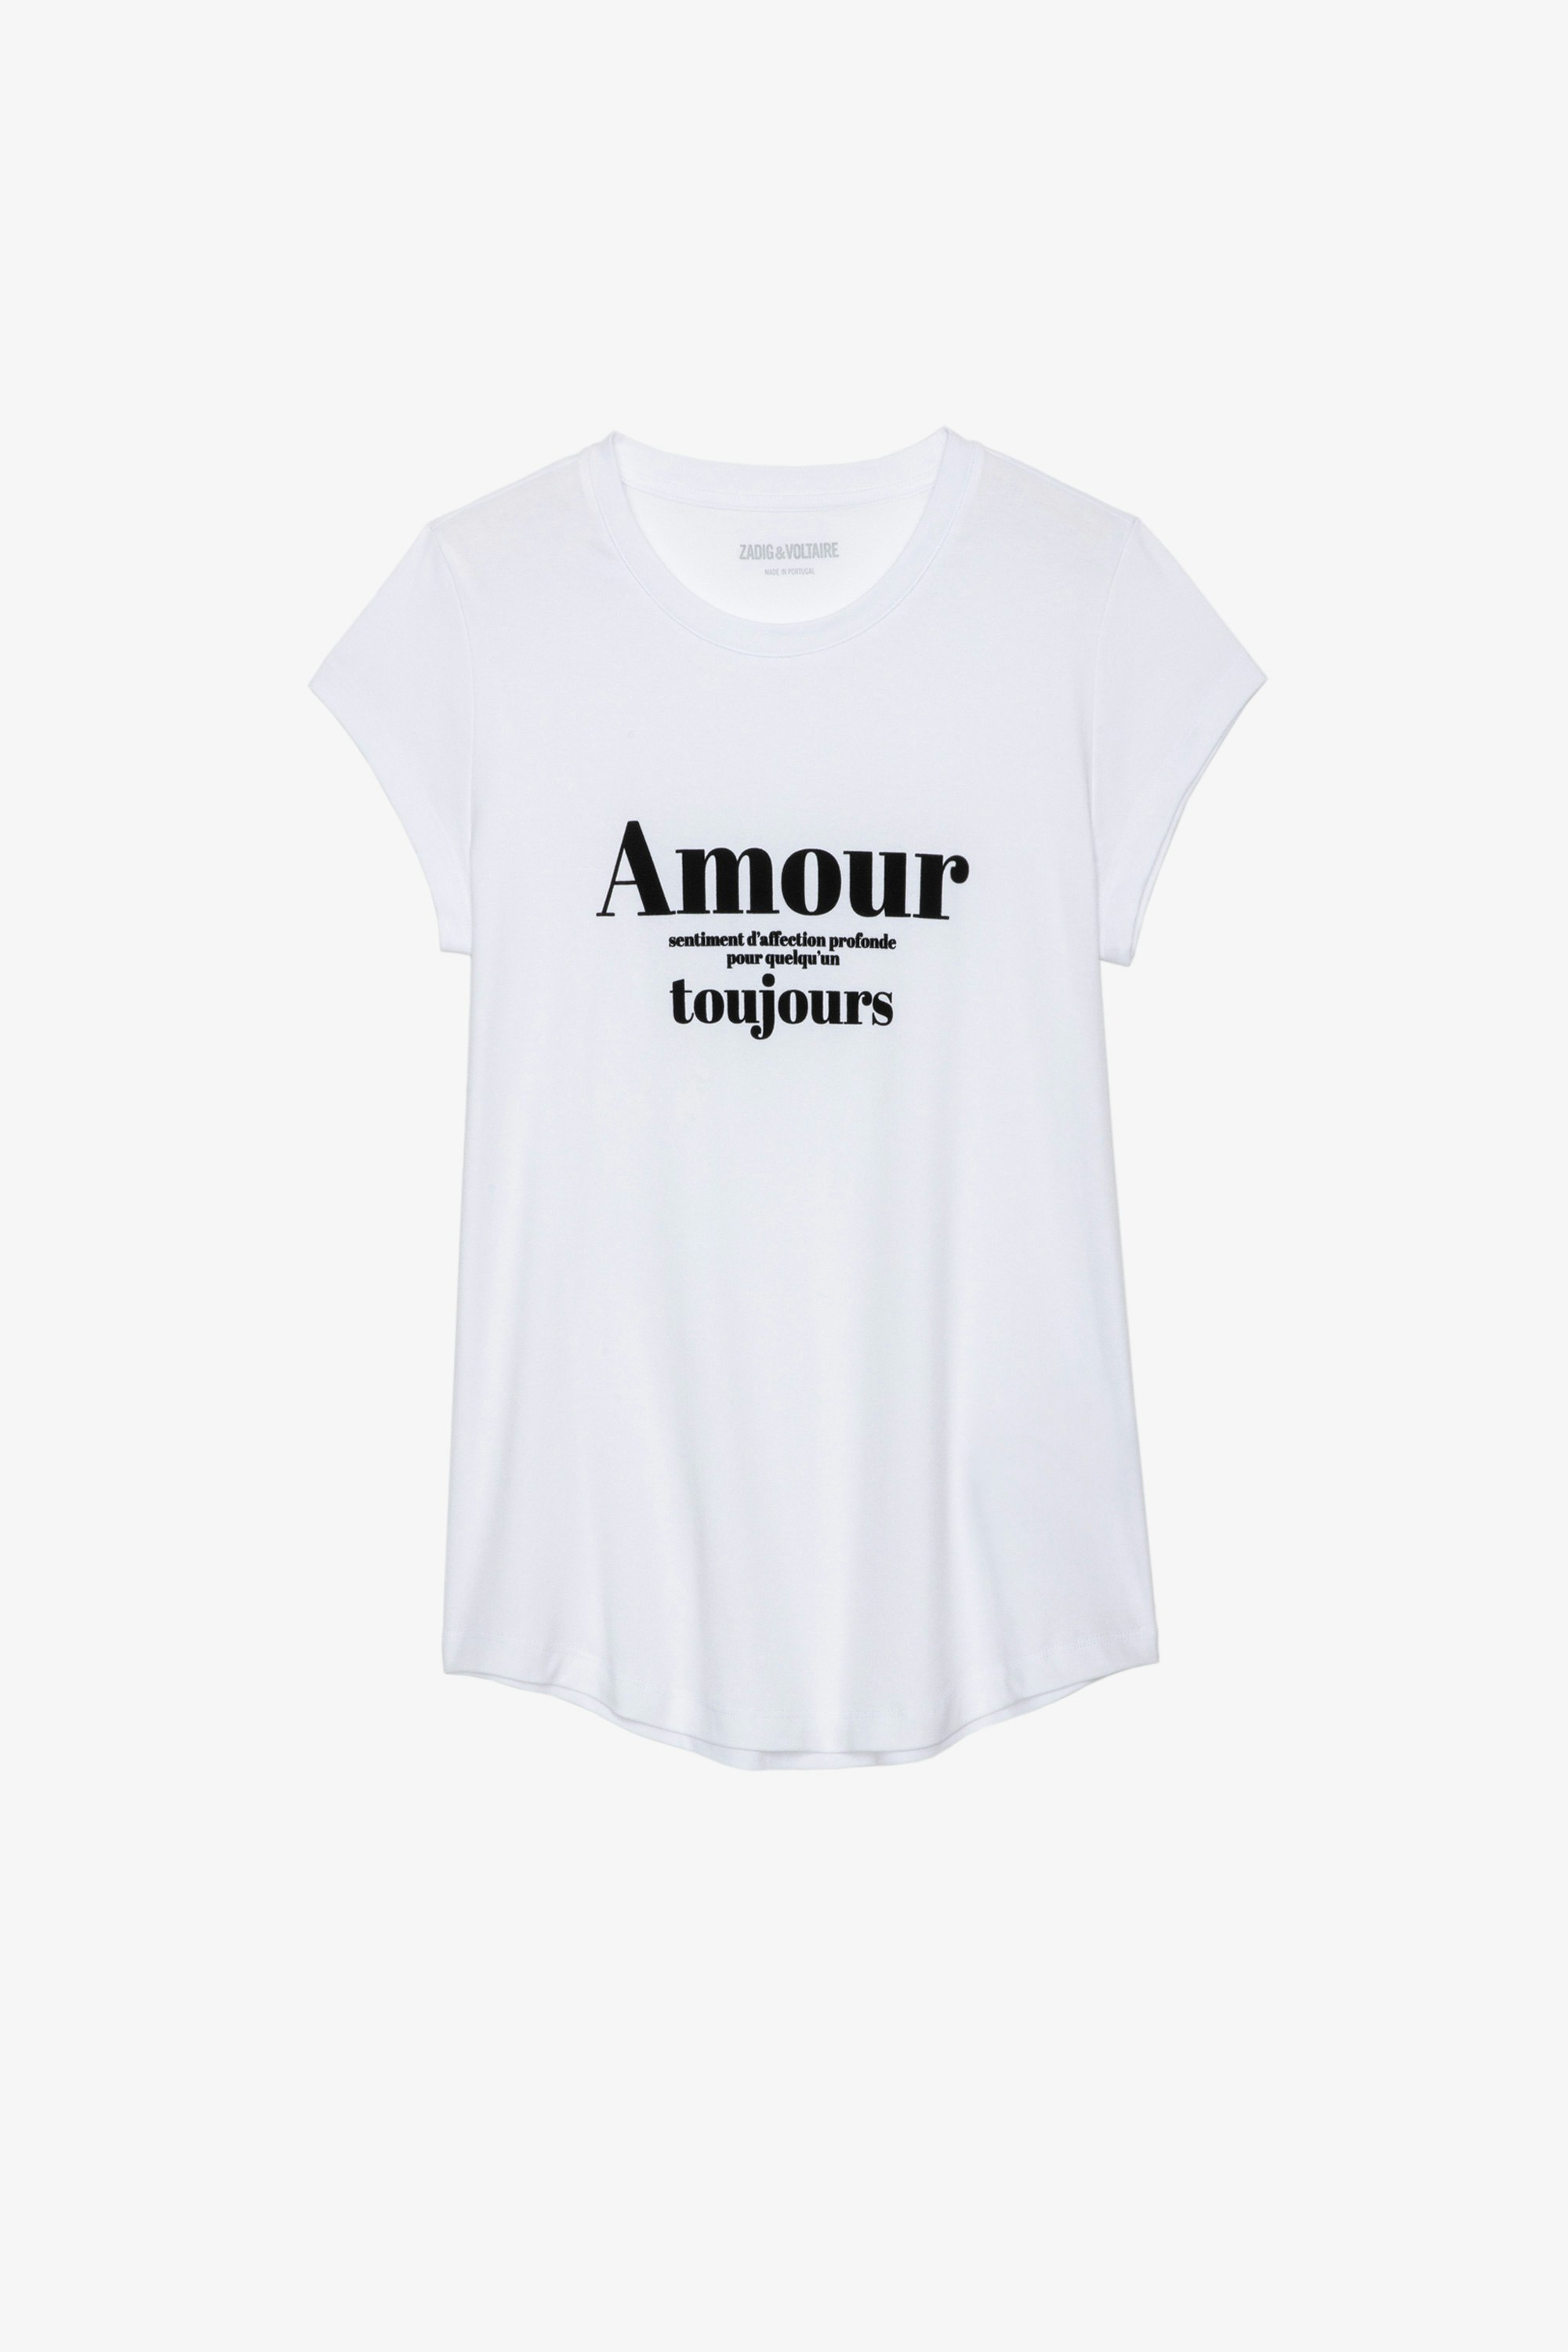 T-shirt Skinny Amour Toujours T-shirt en coton blanc imprimé "Amour Toujours" contrasté Femme